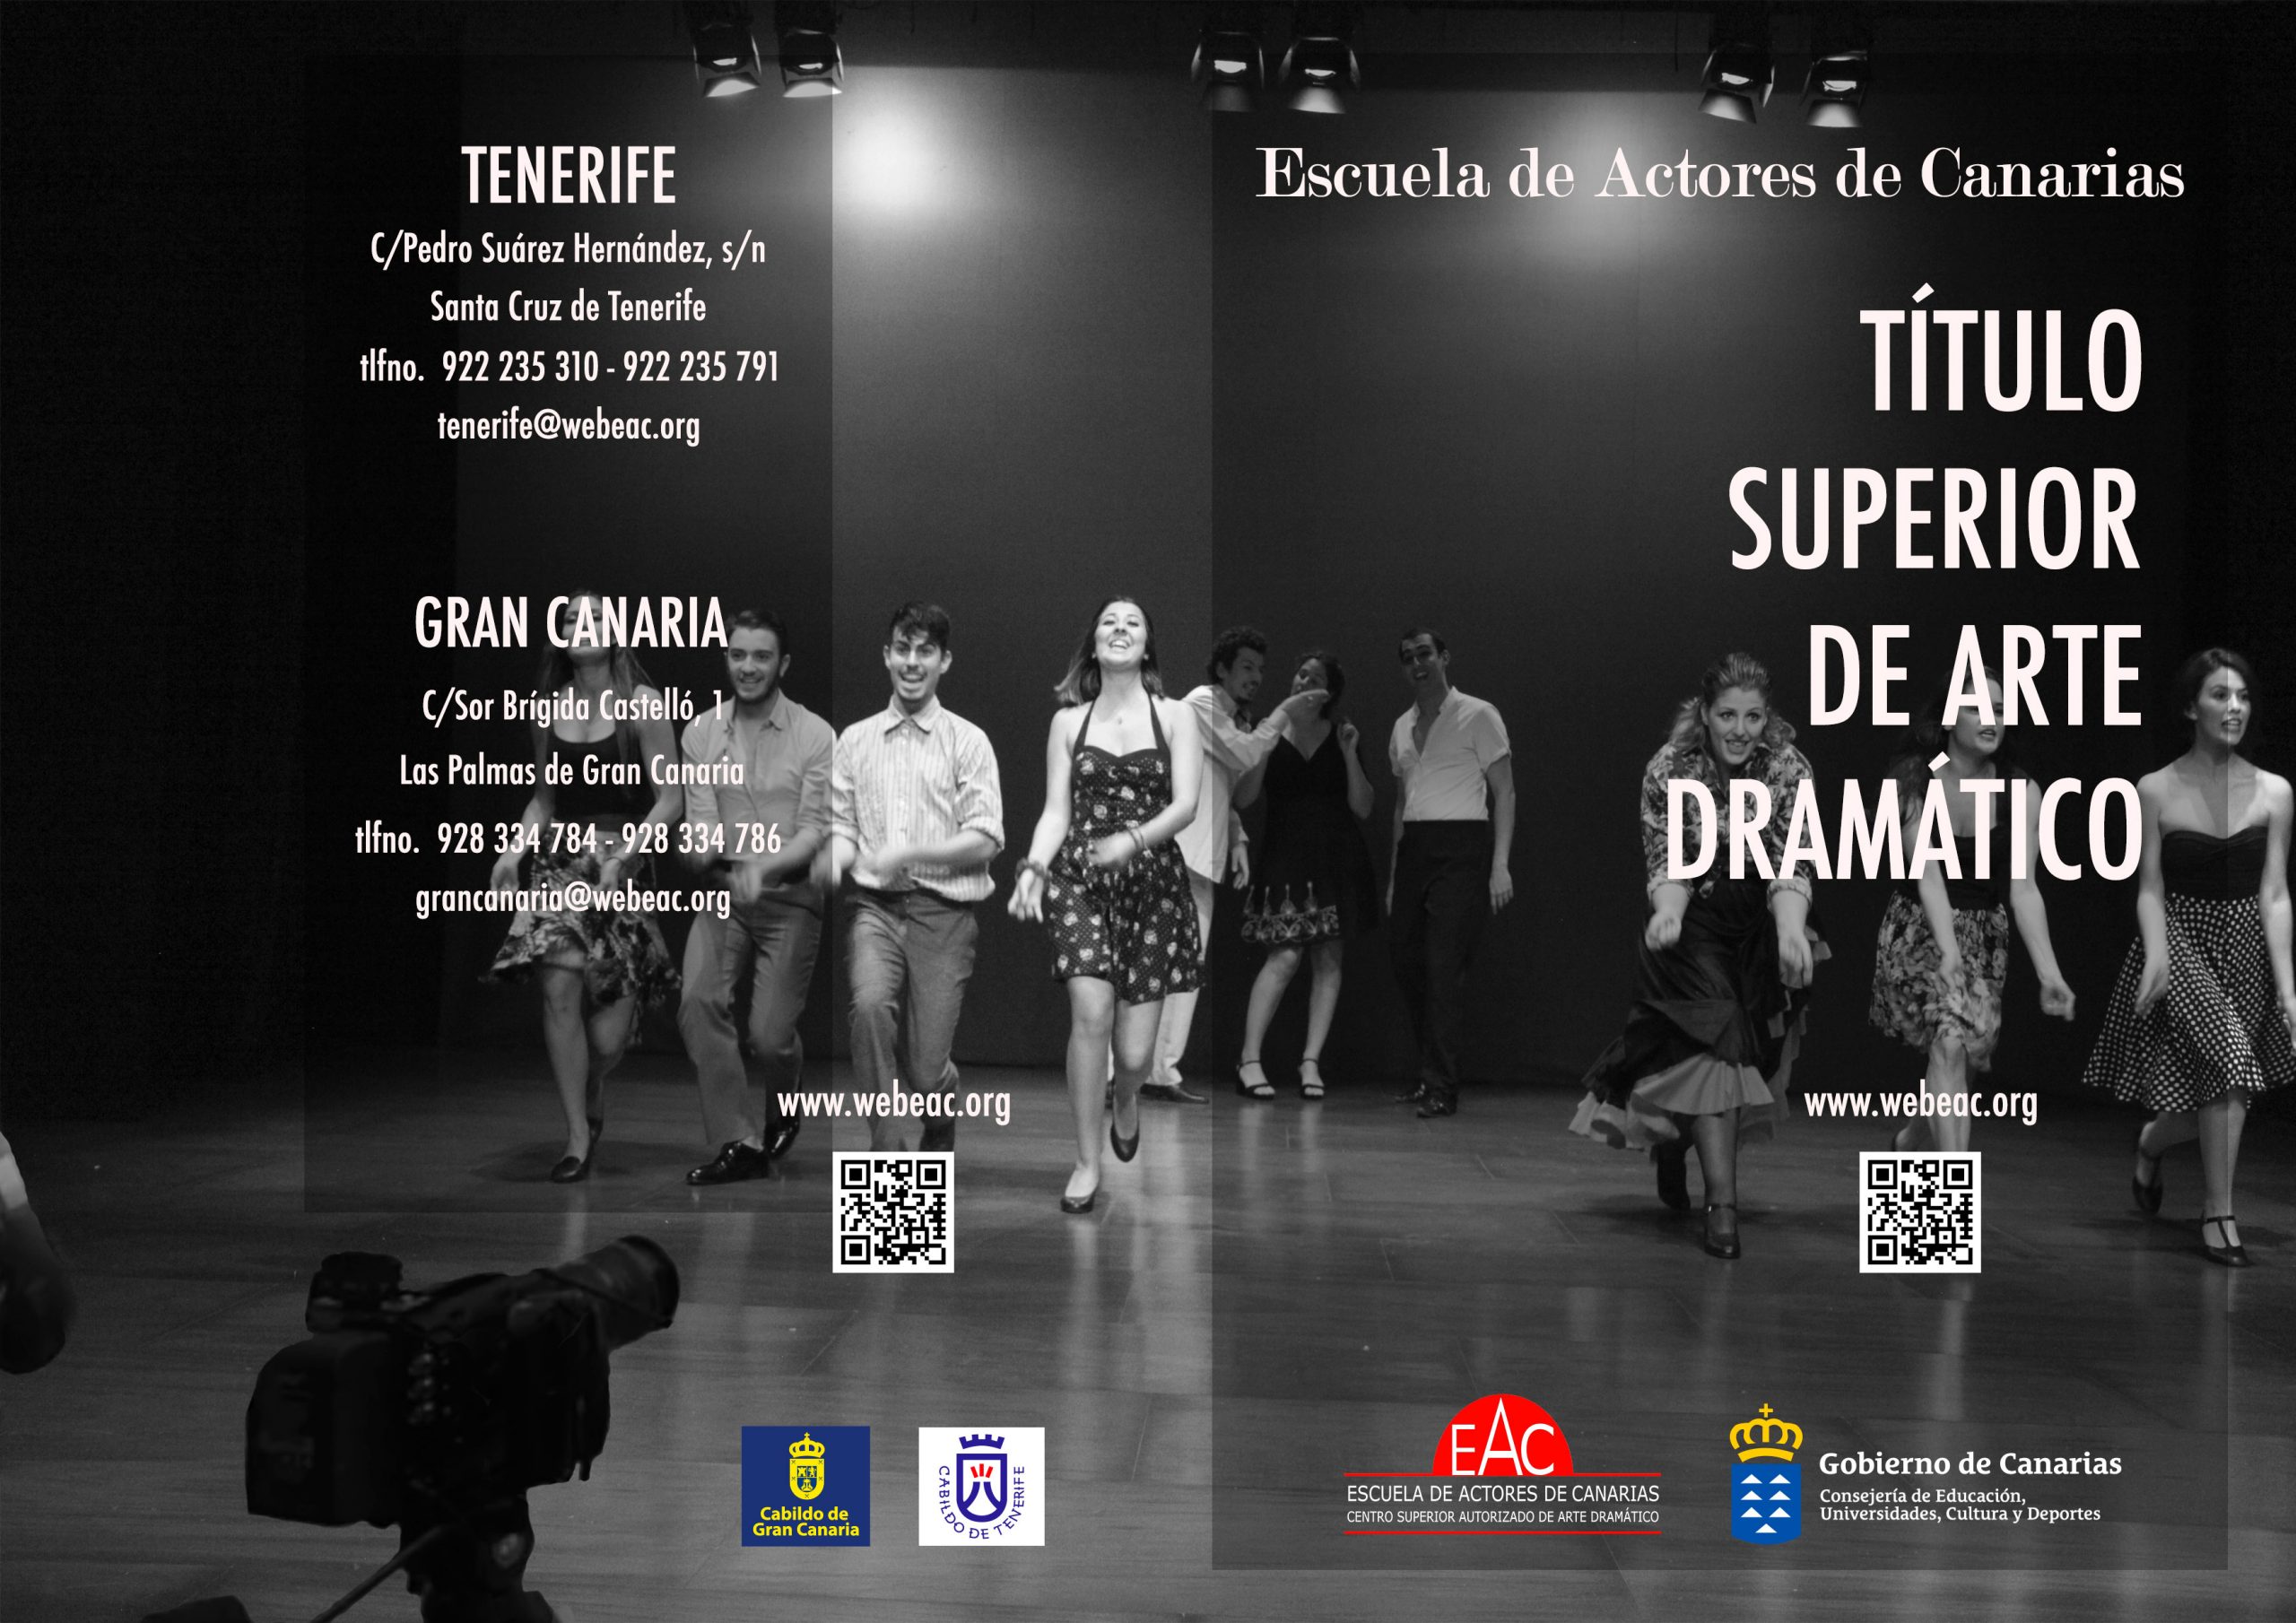 Escuela de Actores de Canarias, suspensión de actividades